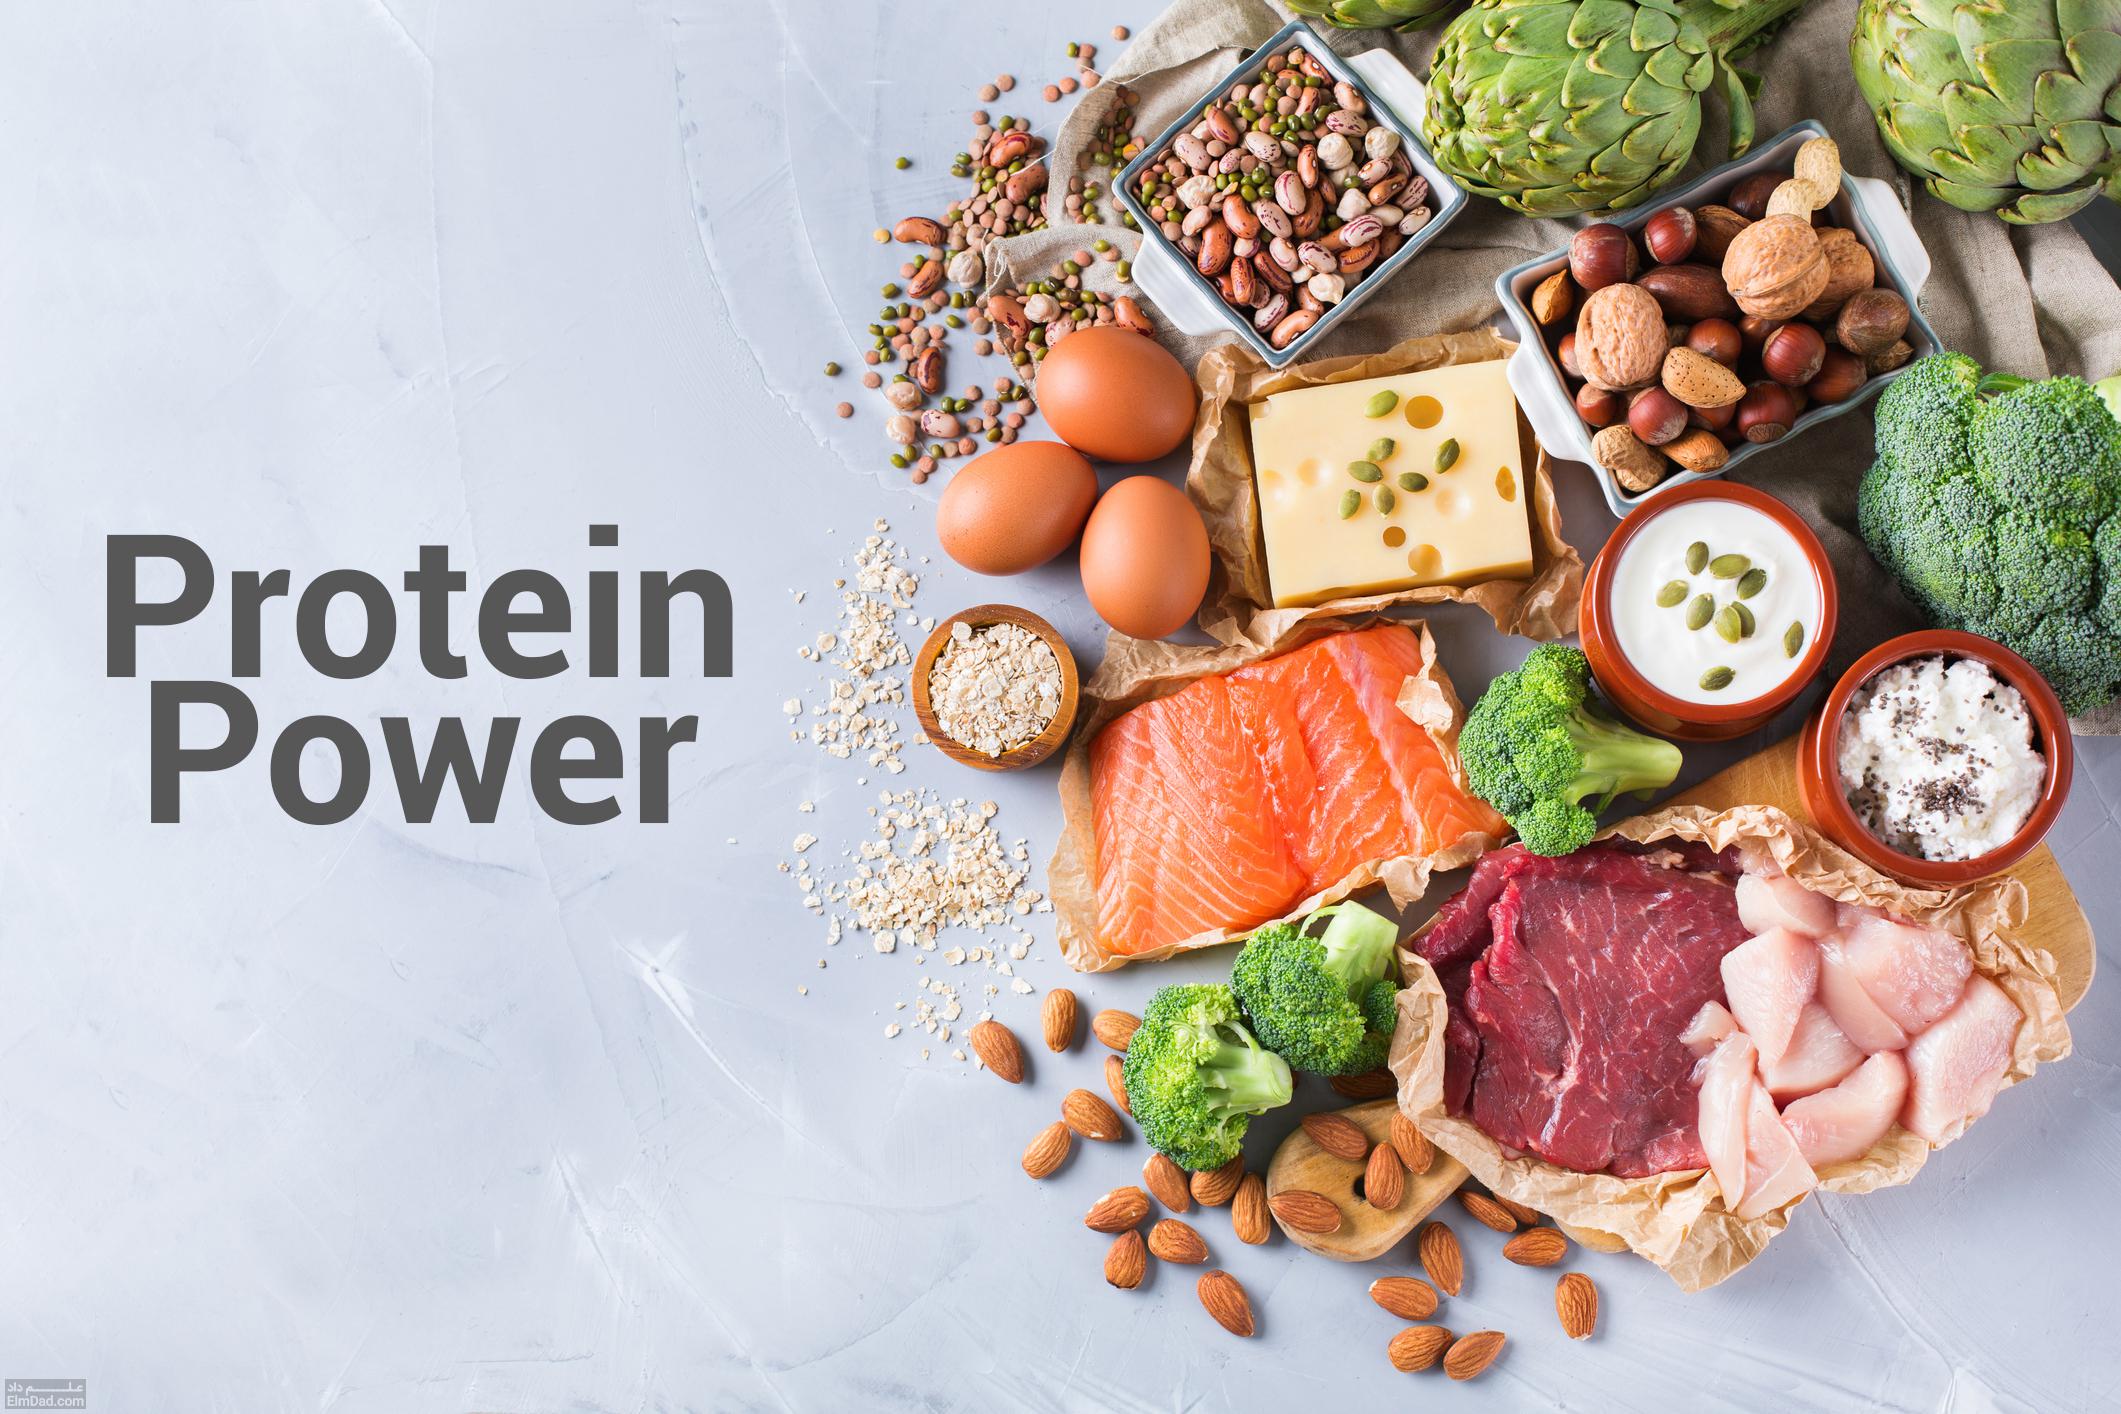 منابع شرشار از پروتئین